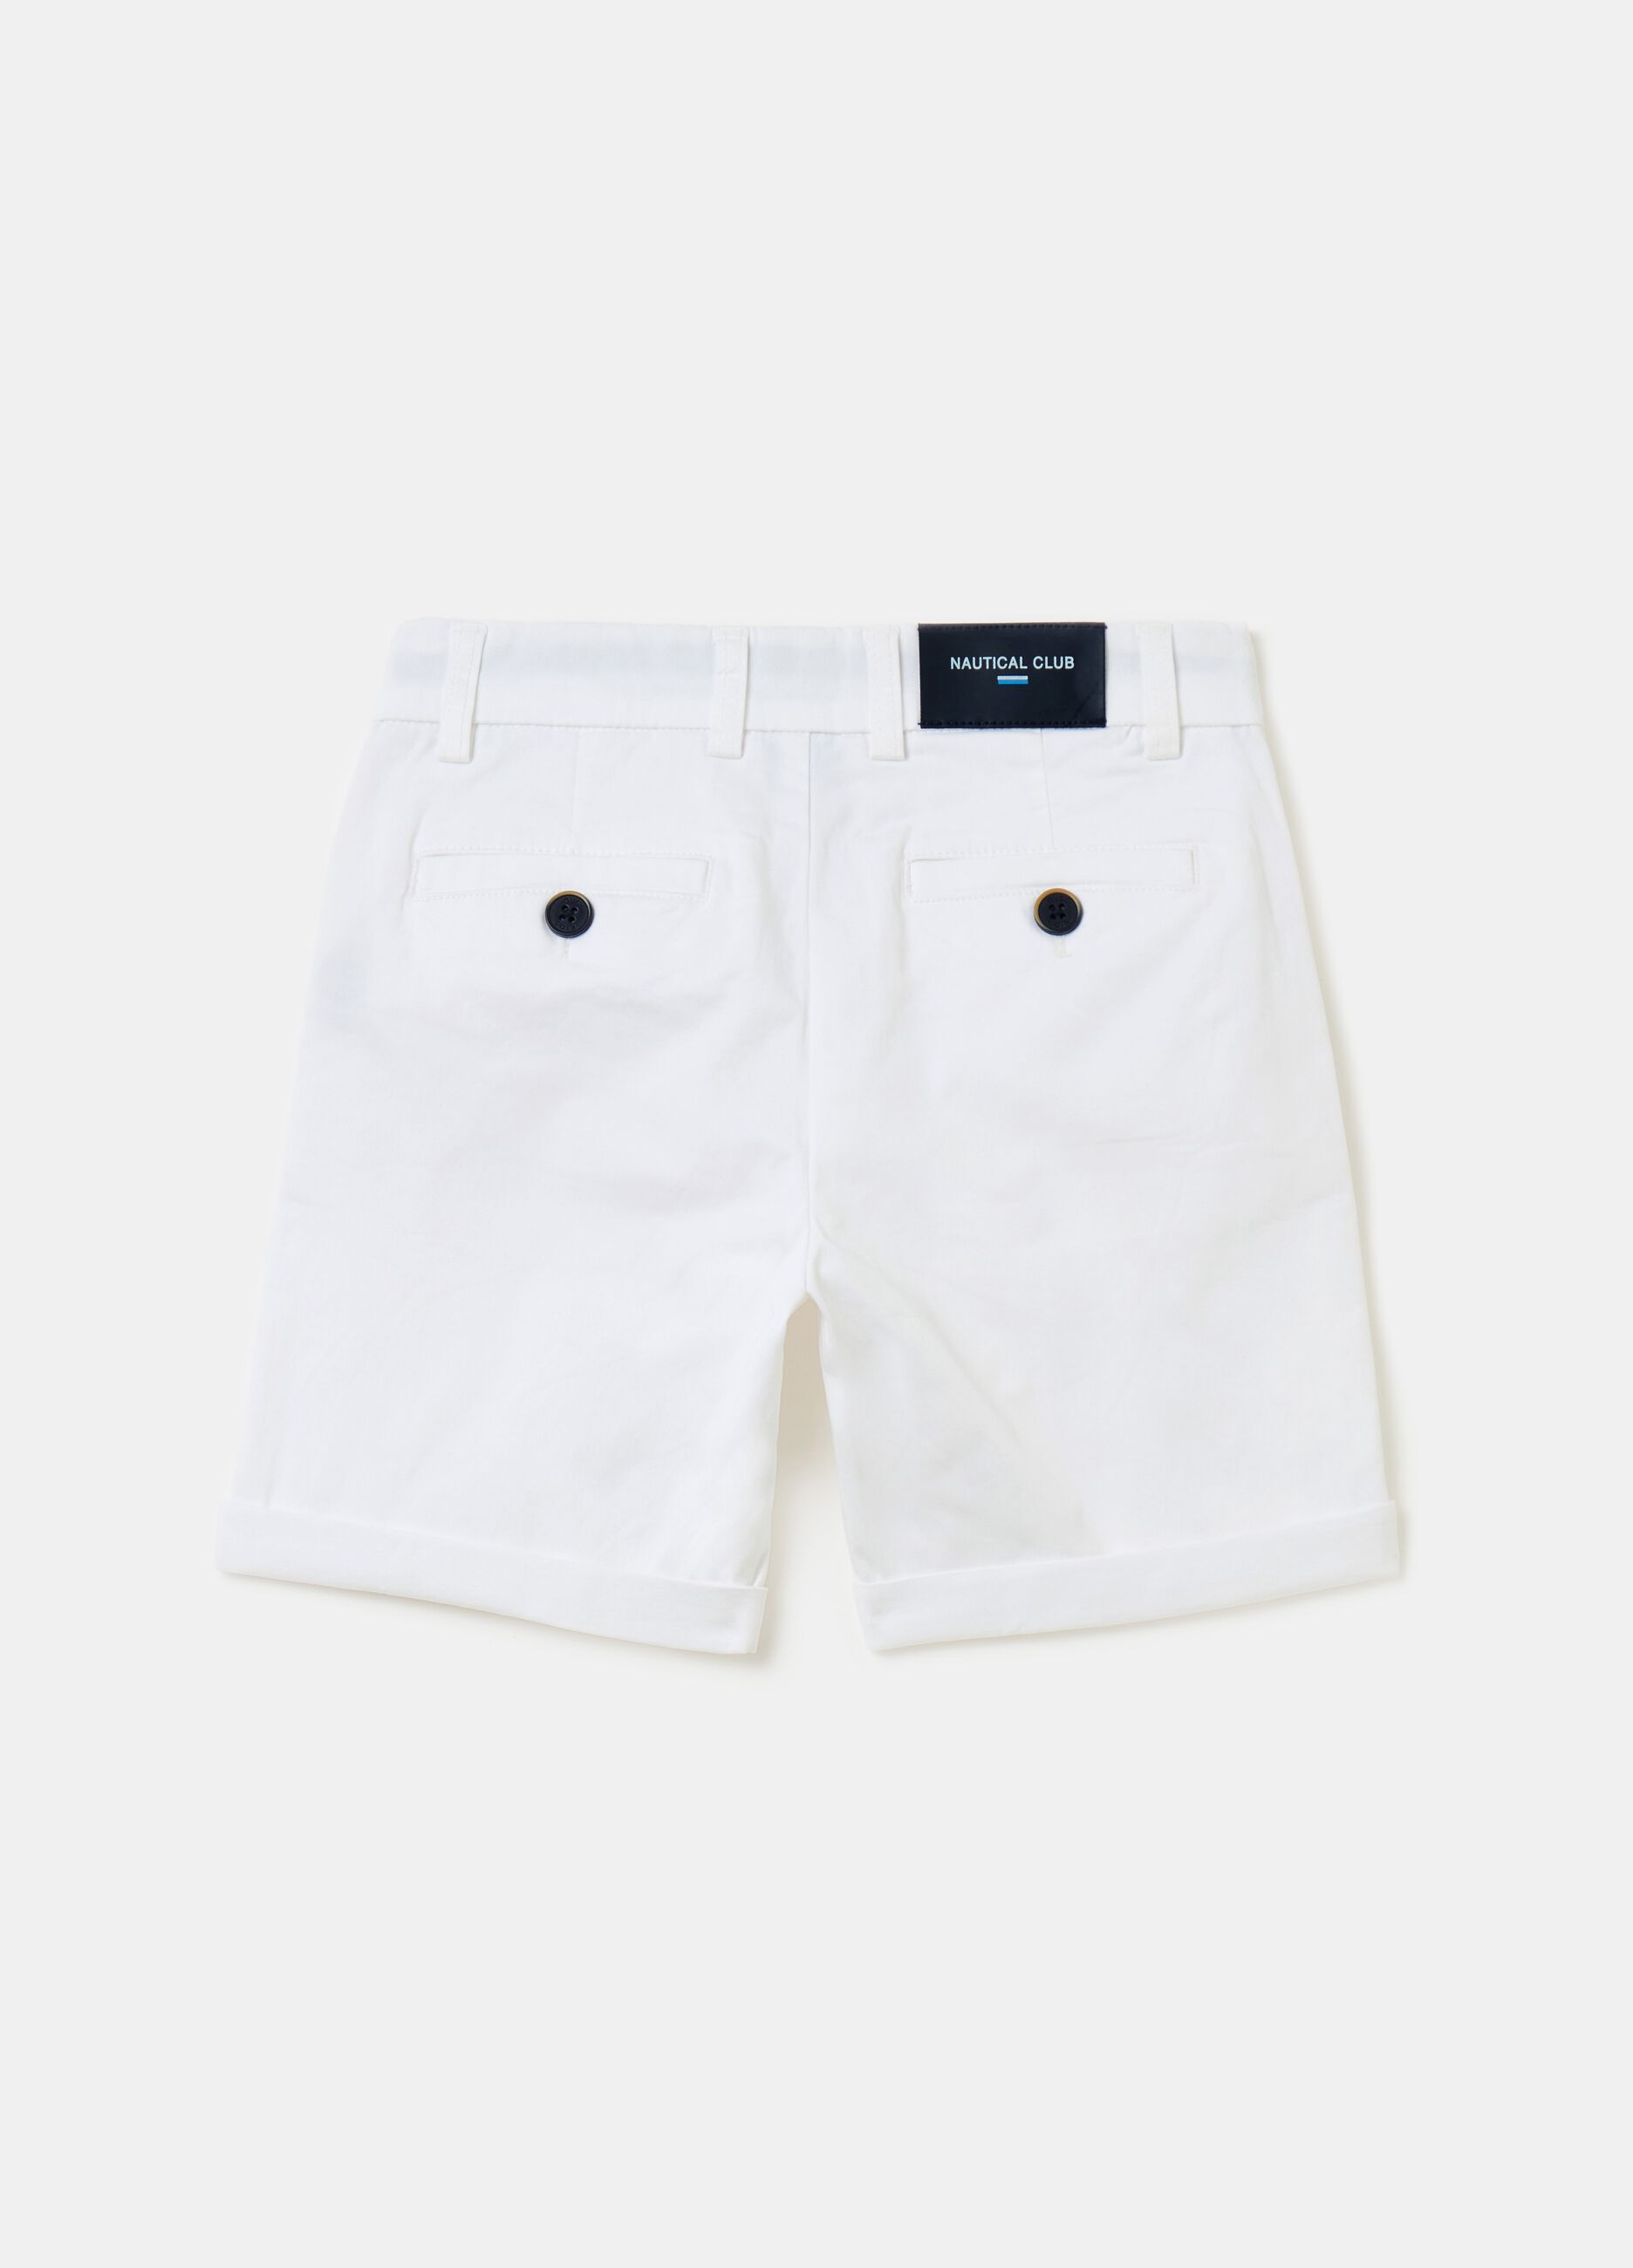 Chino Bermuda shorts with pockets